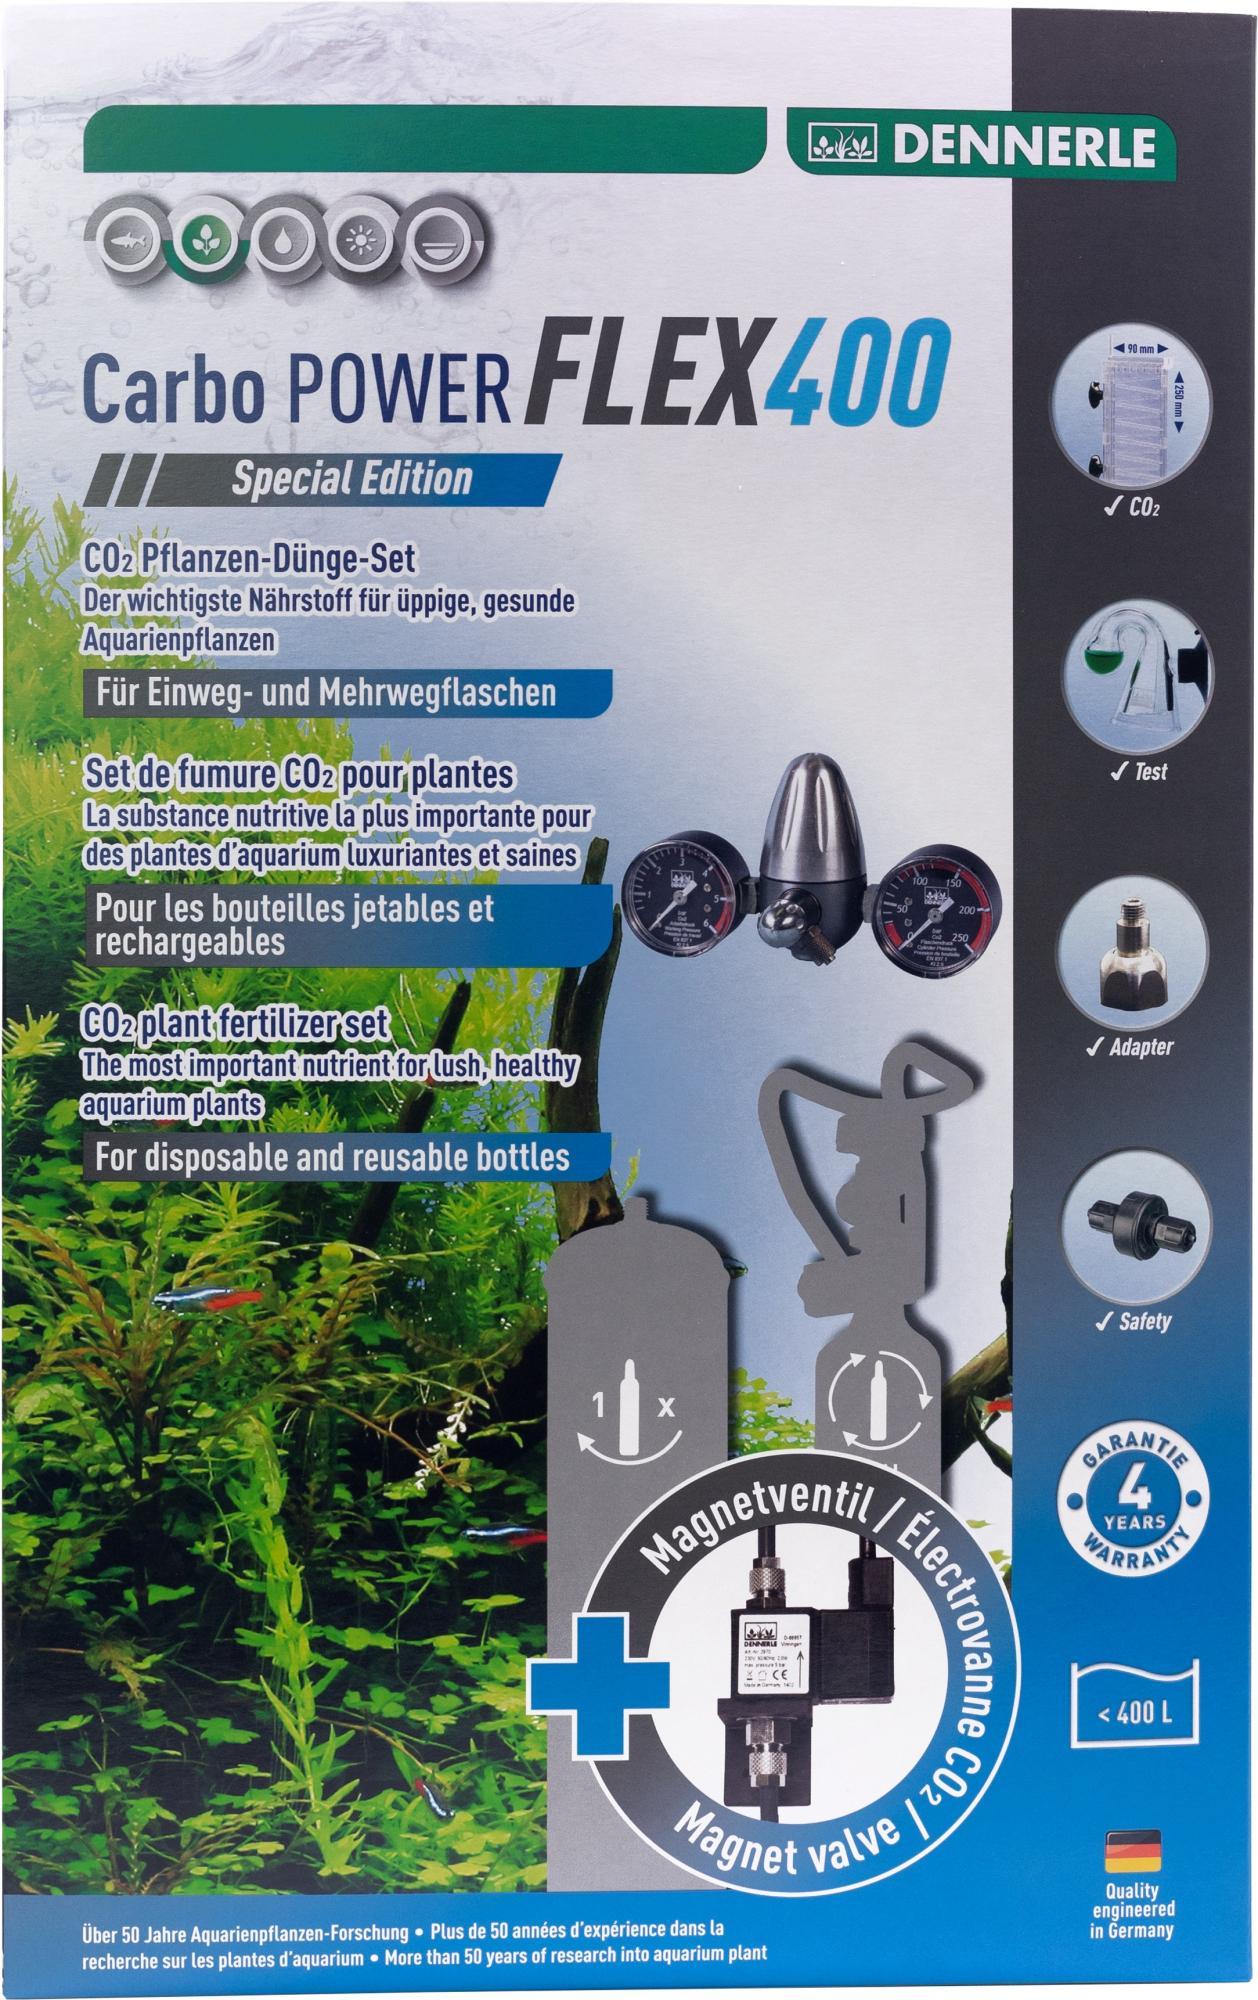 Dennerle Kit de CO2 Carbo Power Flex 400 e flex 400 special édition para garrafas descartáveis ​​e recarregáveis